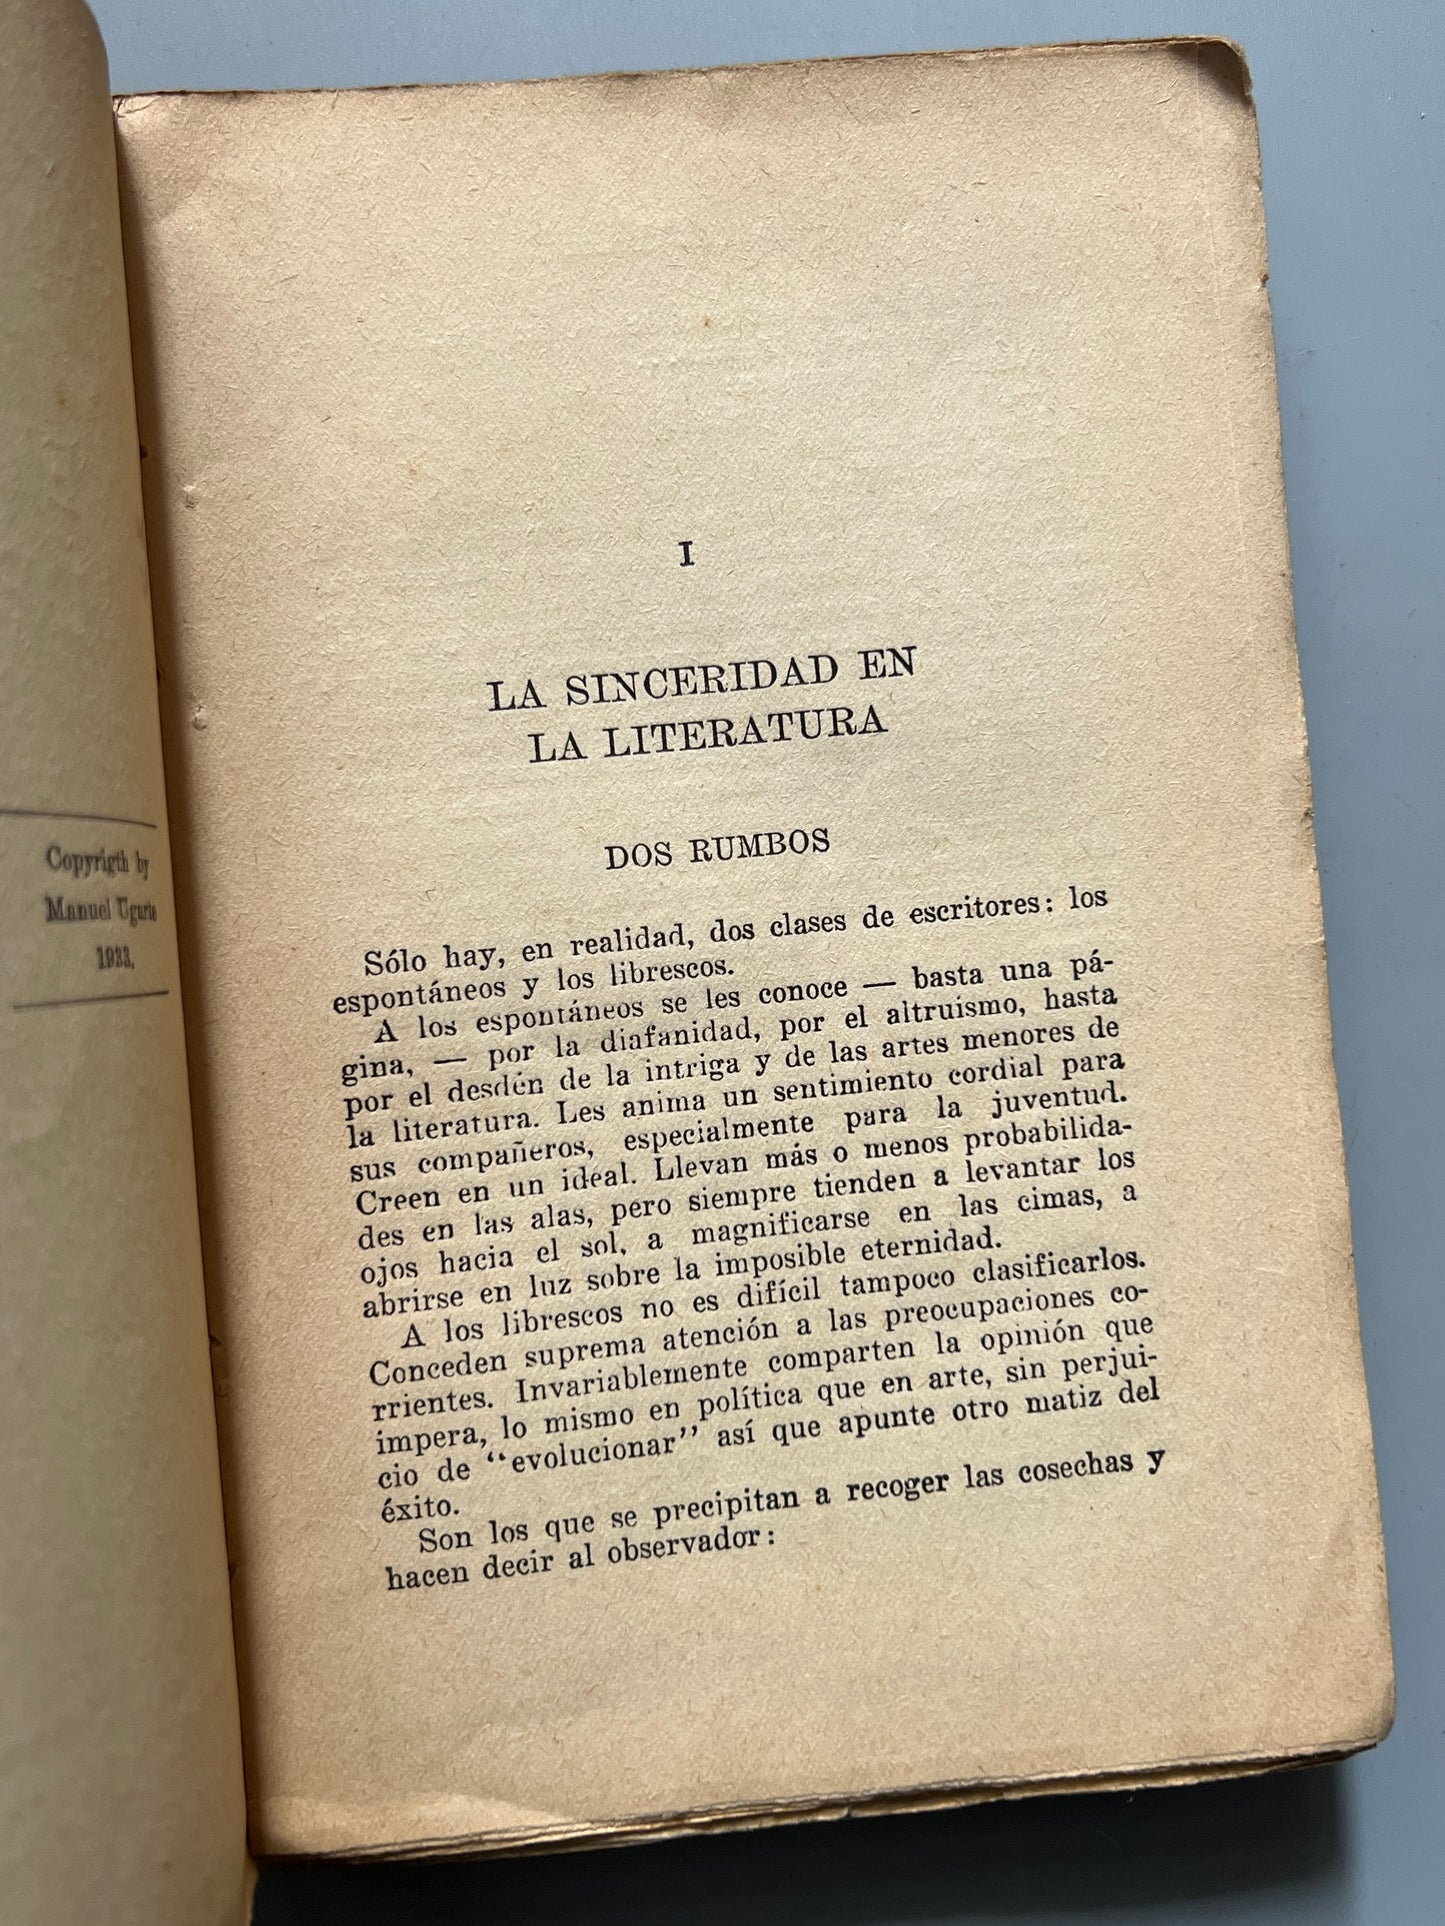 El dolor de escribir, Manuel Ugarte (firmado y dedicado a Miguel Rasch Isla) - C.I.A.P., 1933